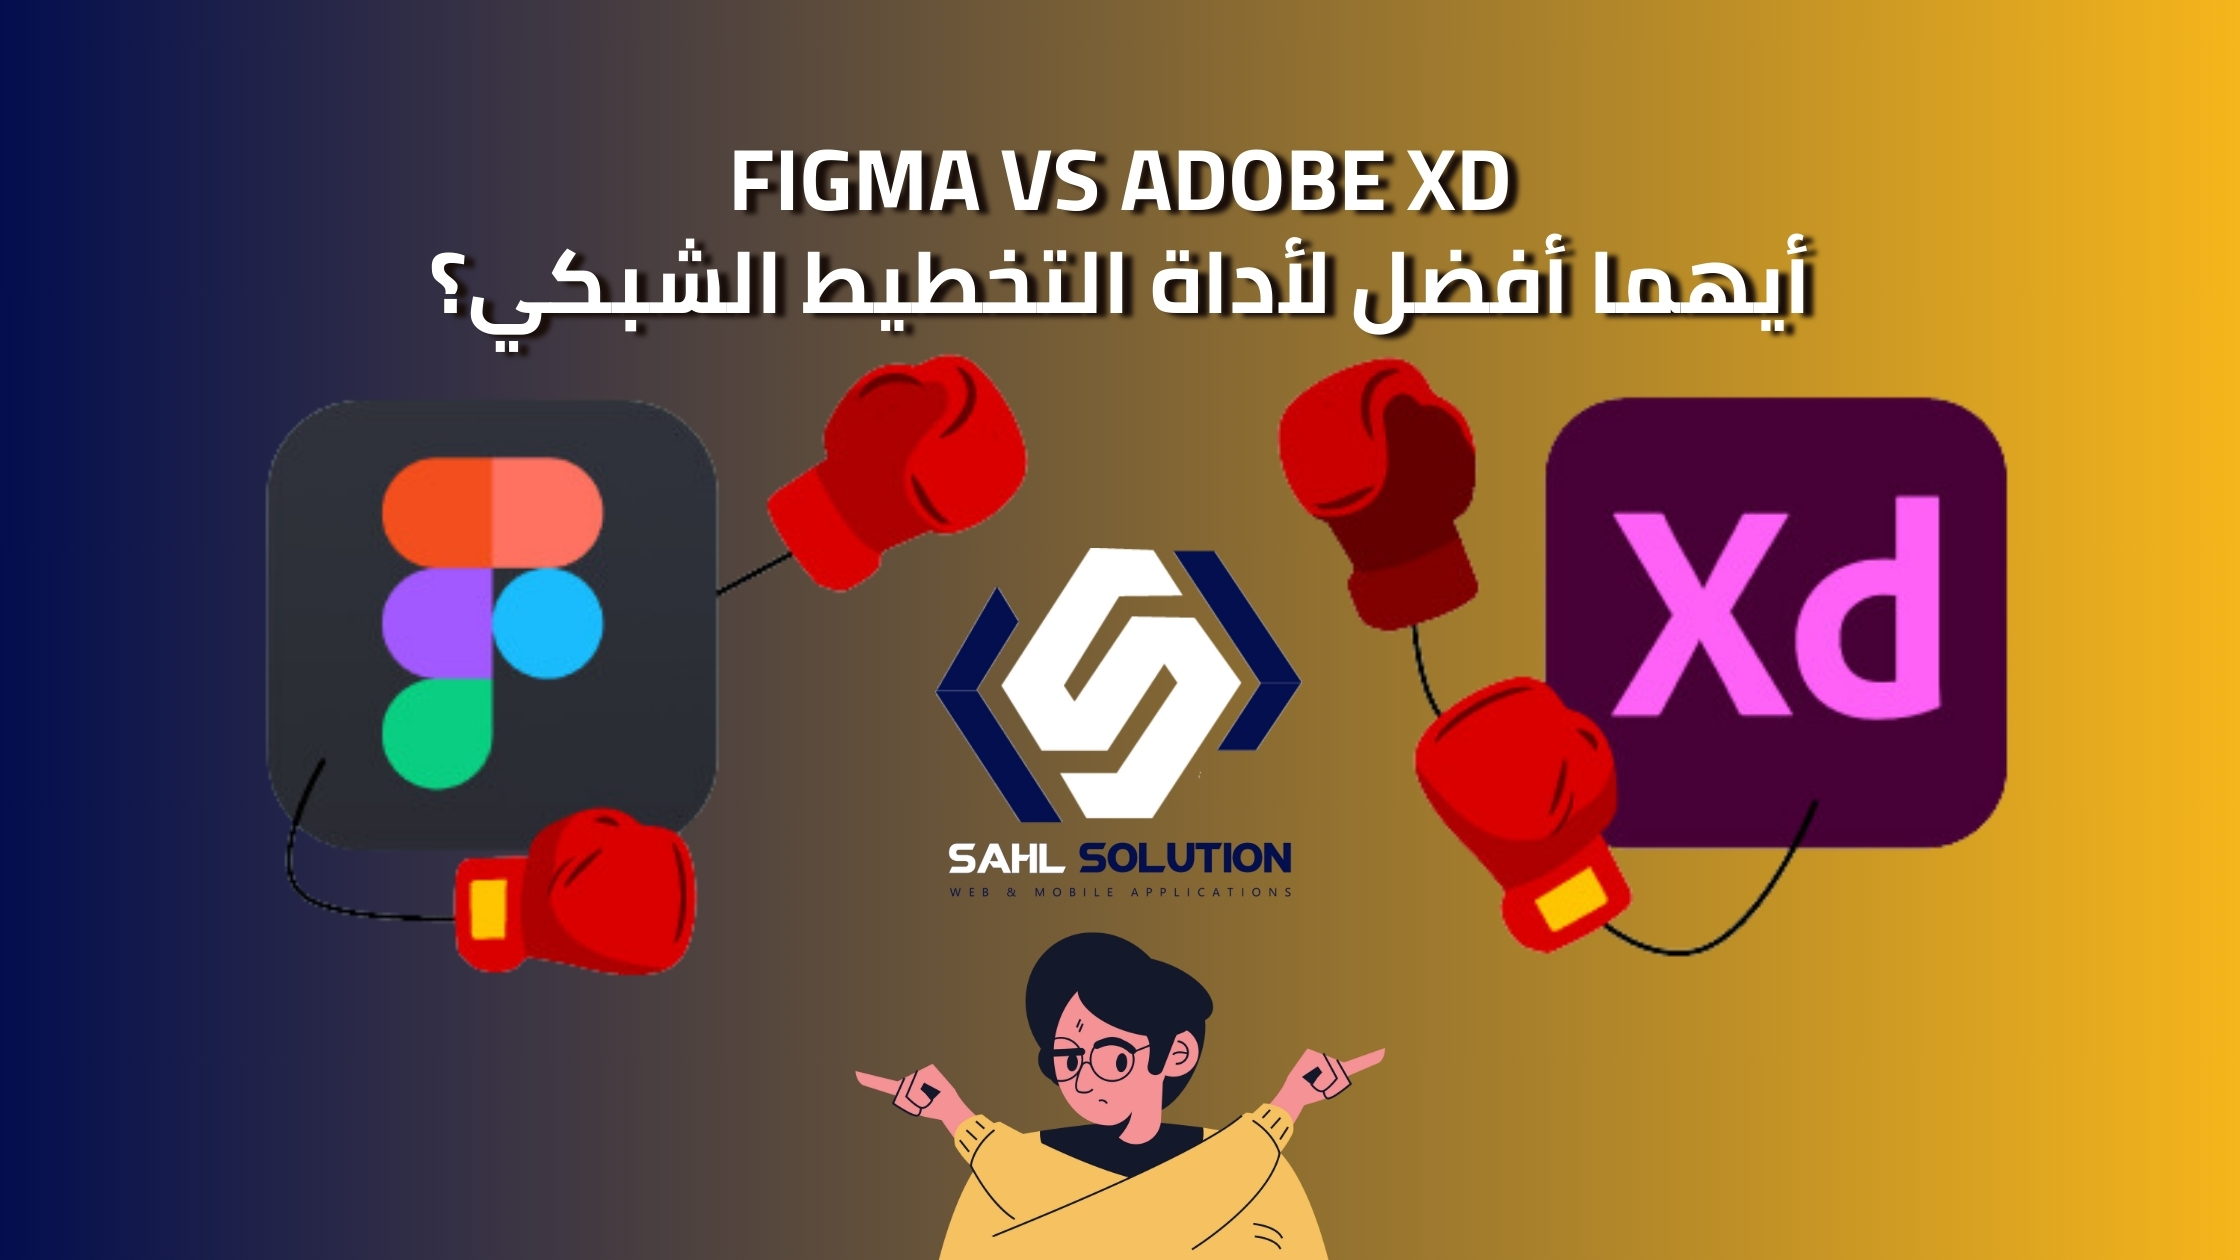 Adobe XD vs Figma